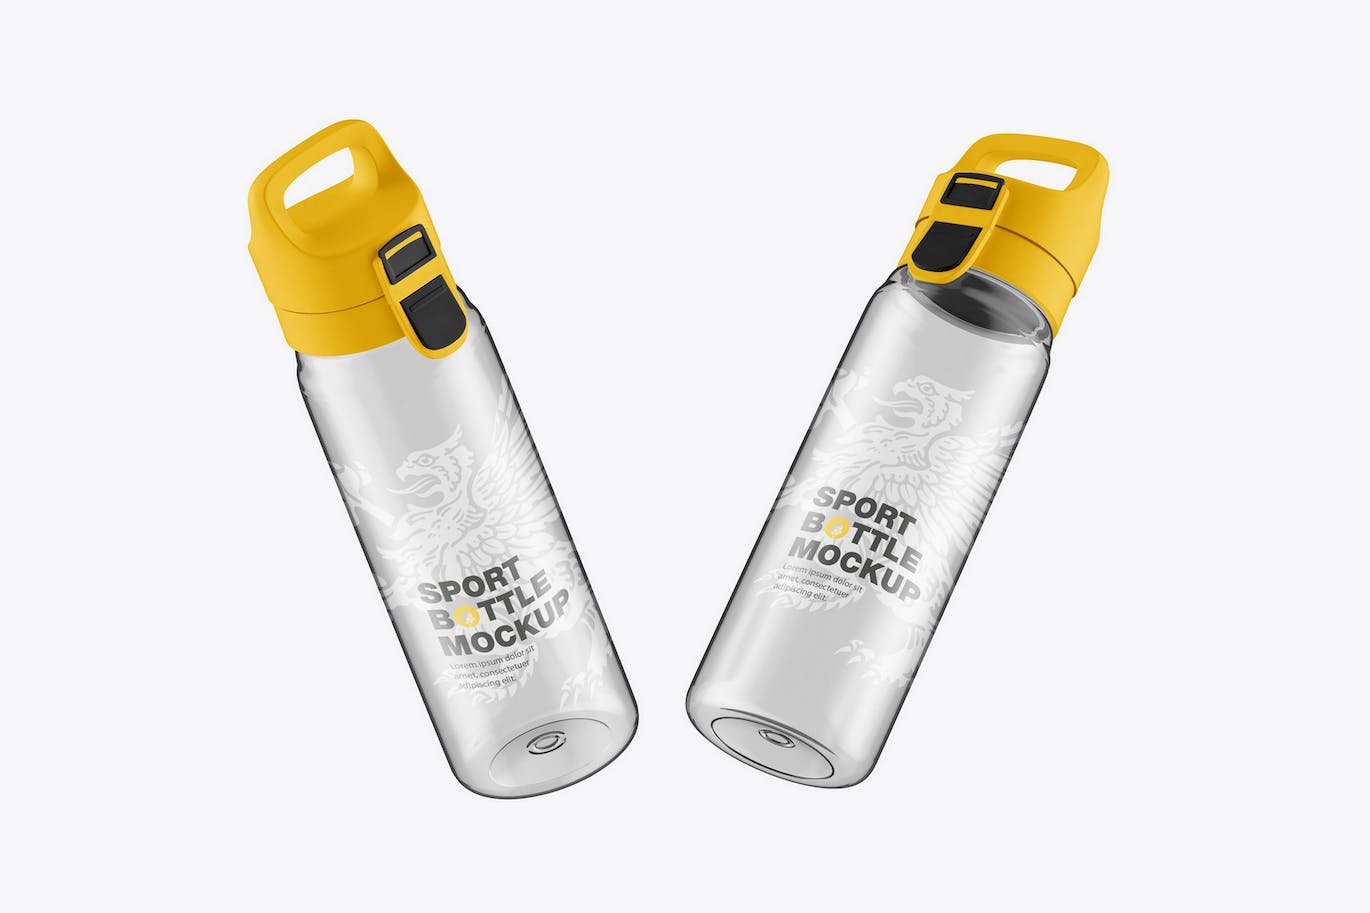 透明塑料运动水瓶设计样机 Sport Bottle Mockup 样机素材 第1张